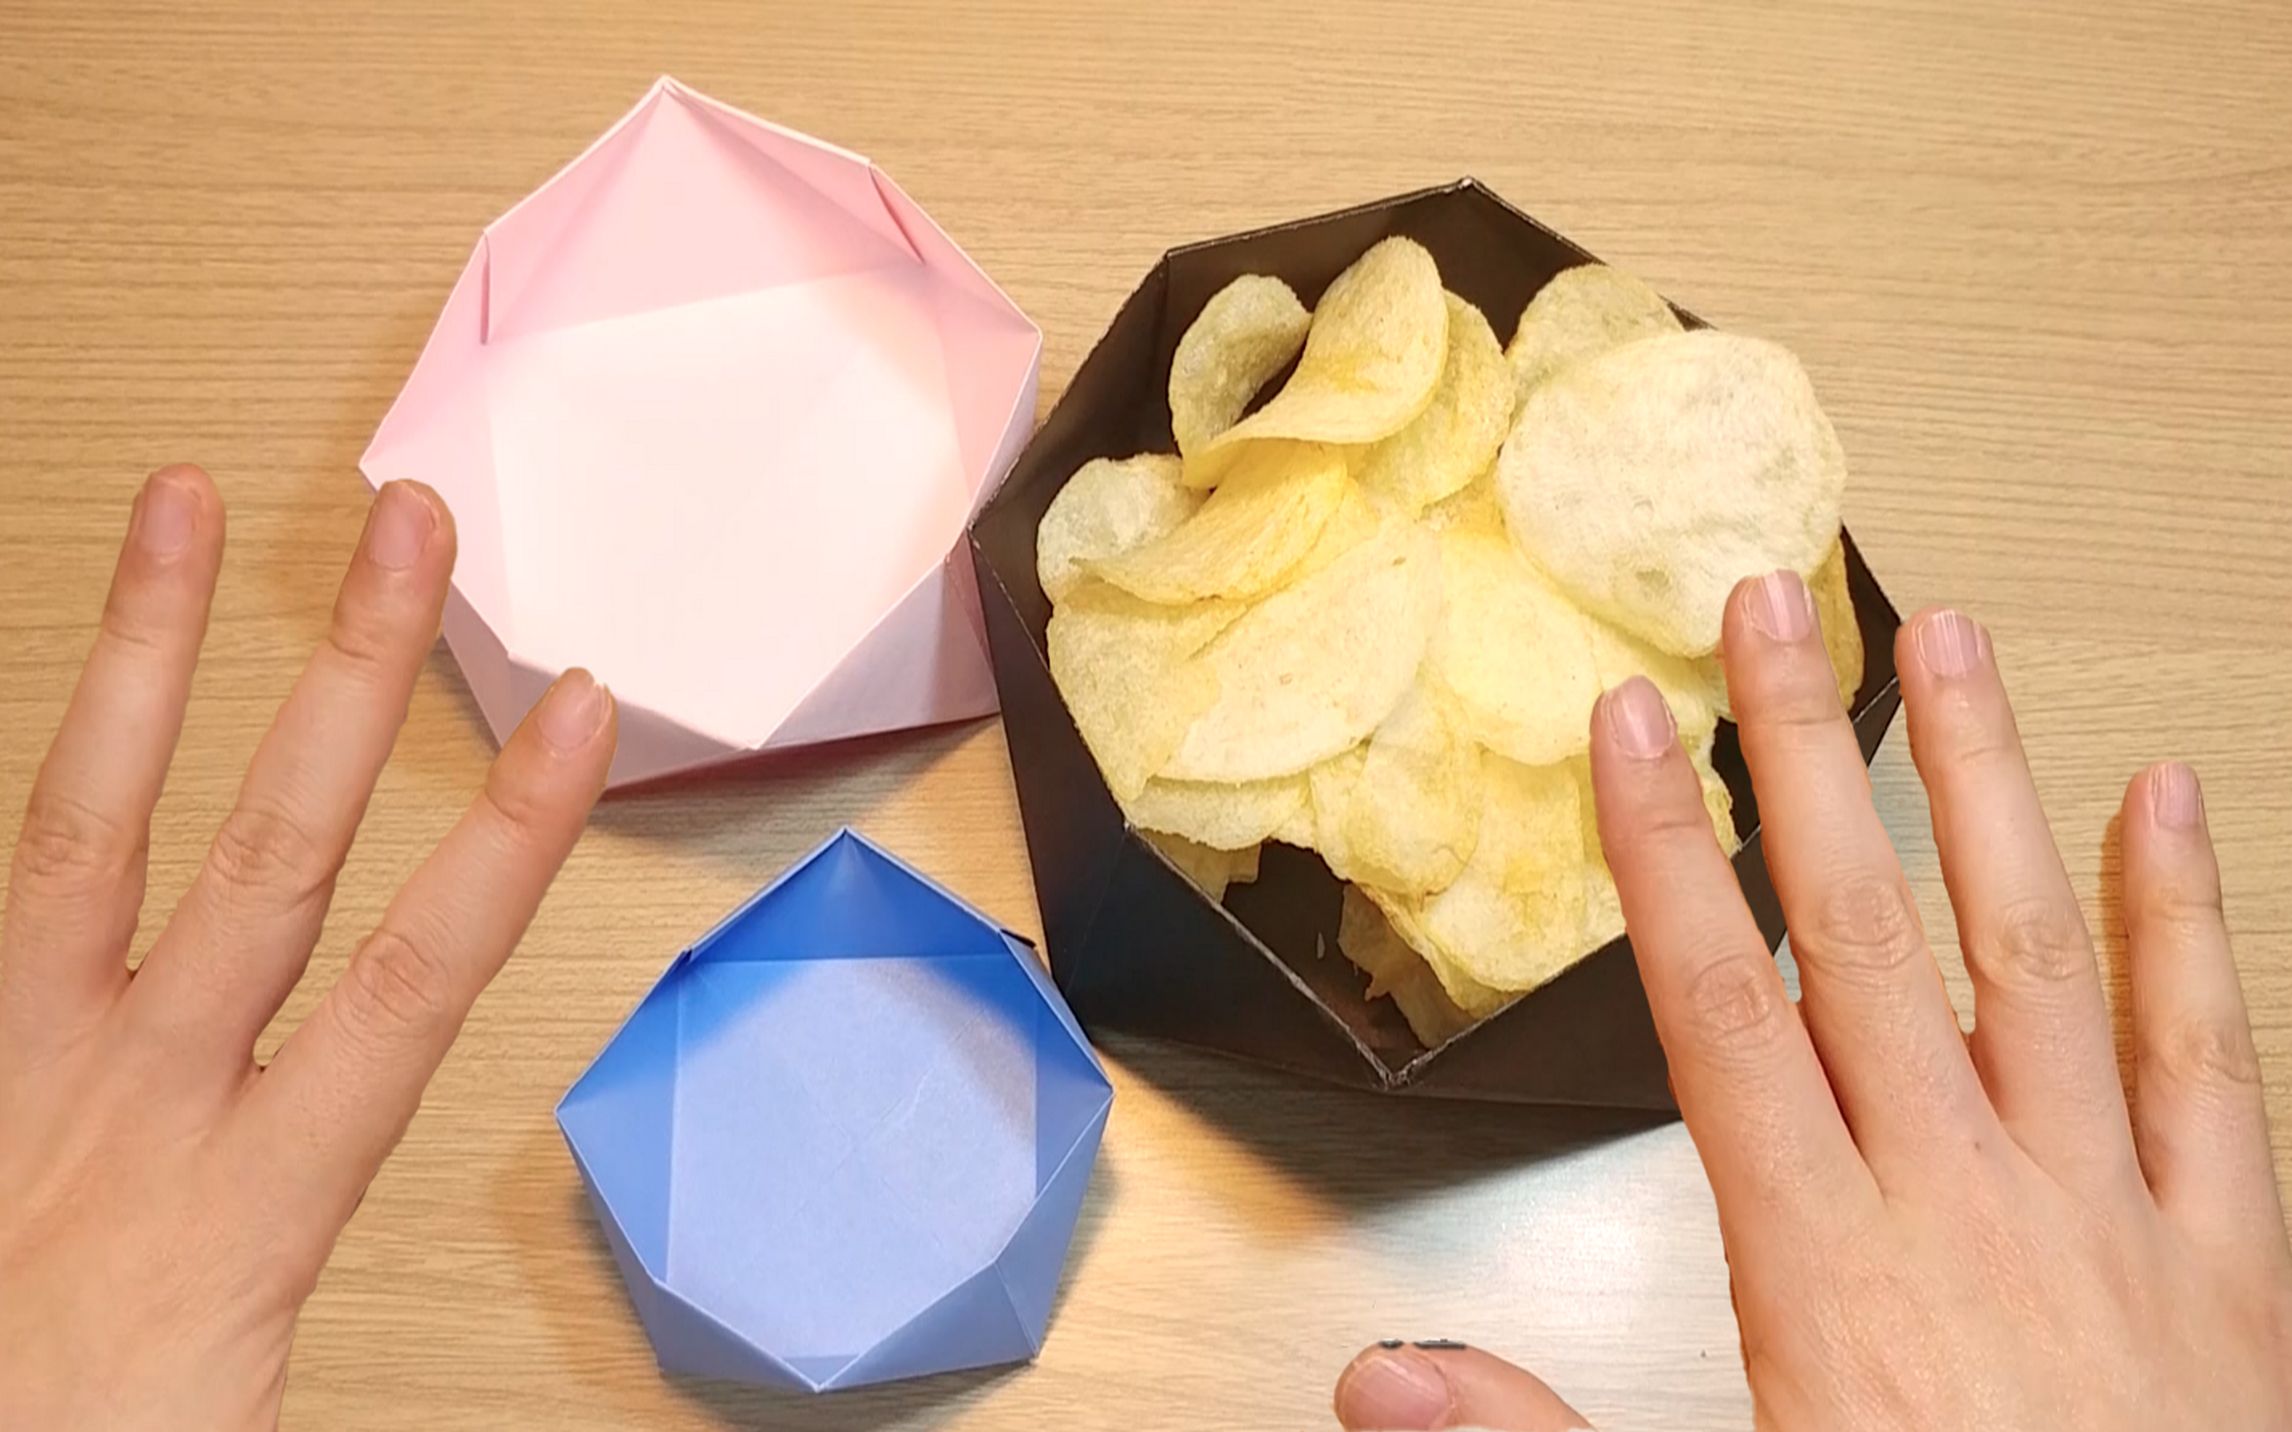 【折纸教程】碗你一定见过 但纸折的碗你一定没见过!